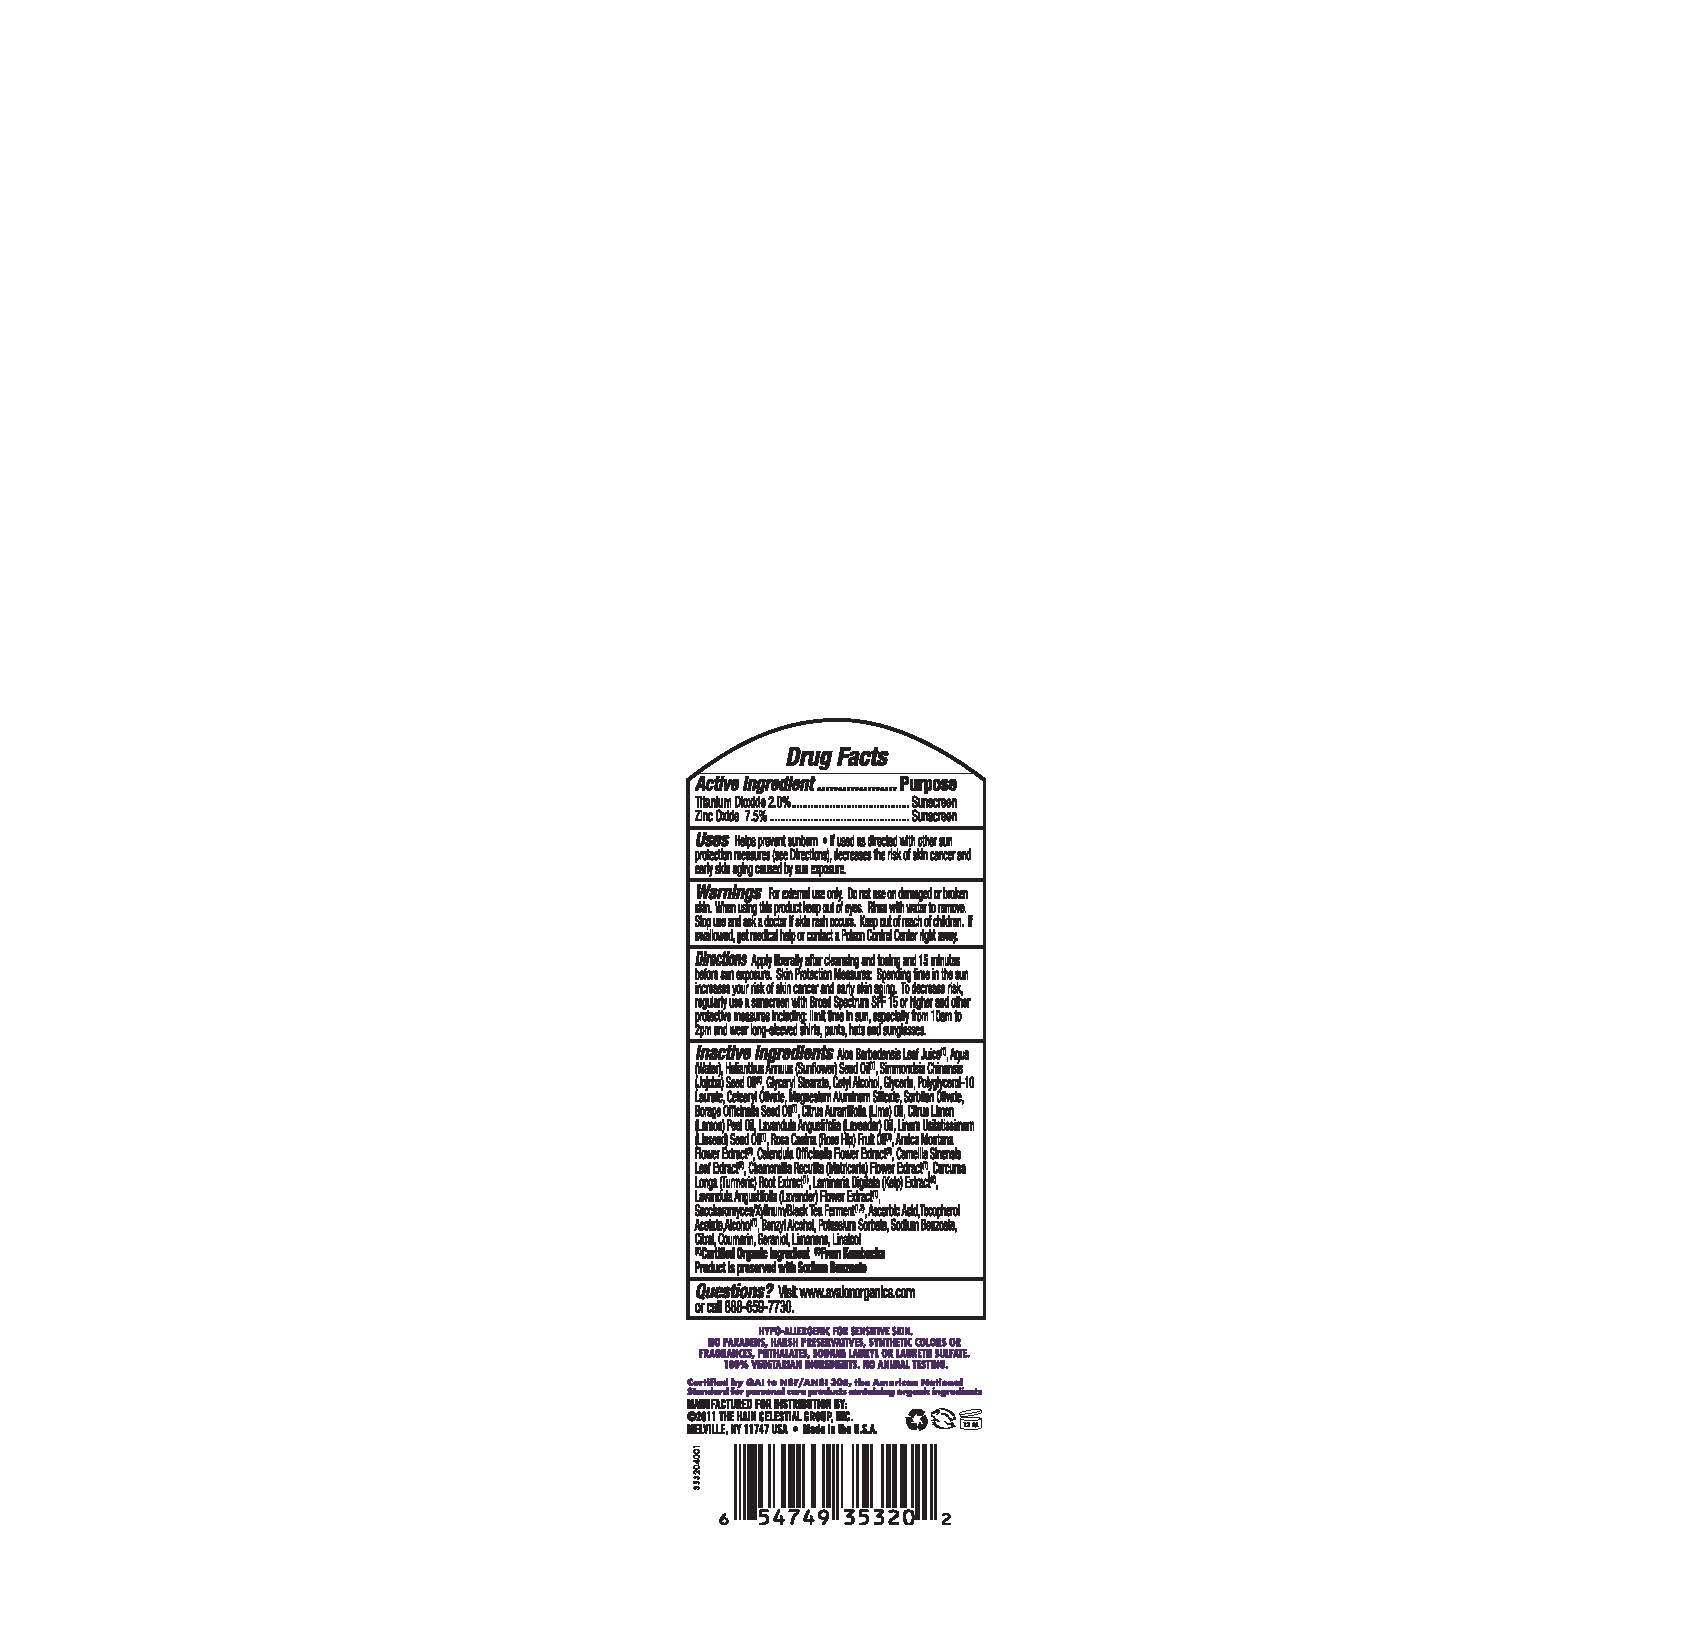 image of bottle back label